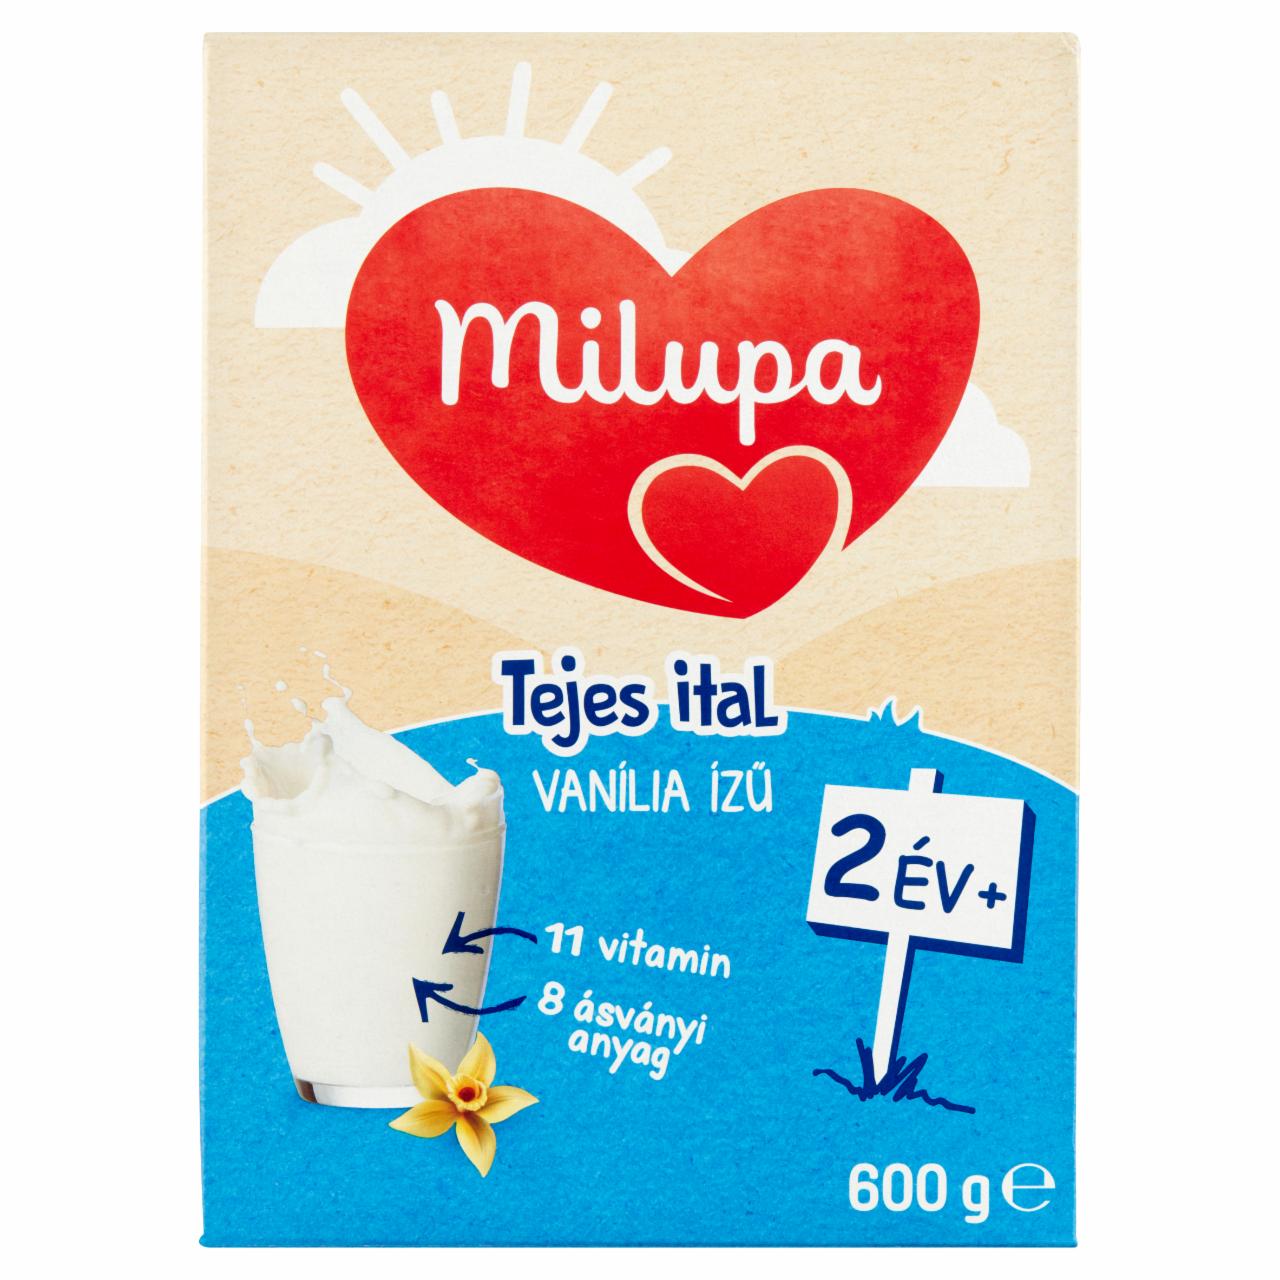 Képek - Milupa vanília ízű tejes ital 2 év+ 600 g